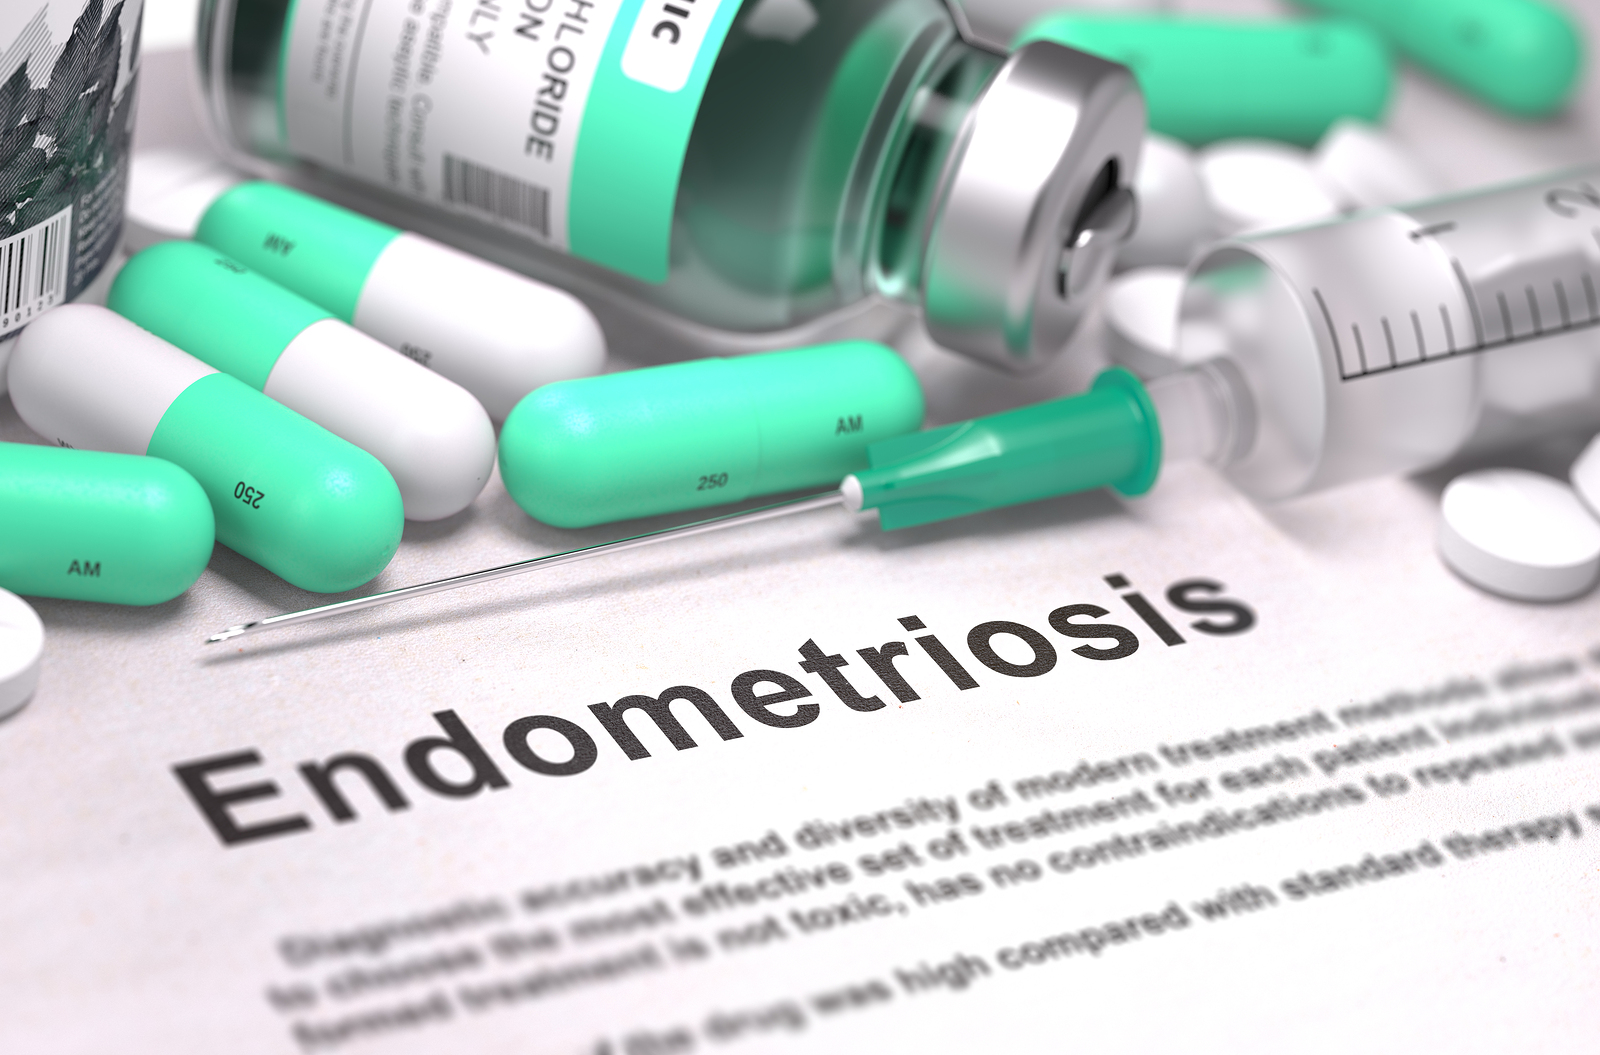 Az endometriózis gyógyszeres kezelésére rendszerint a műtét után kerül sor, de önmagában is alkalmazható